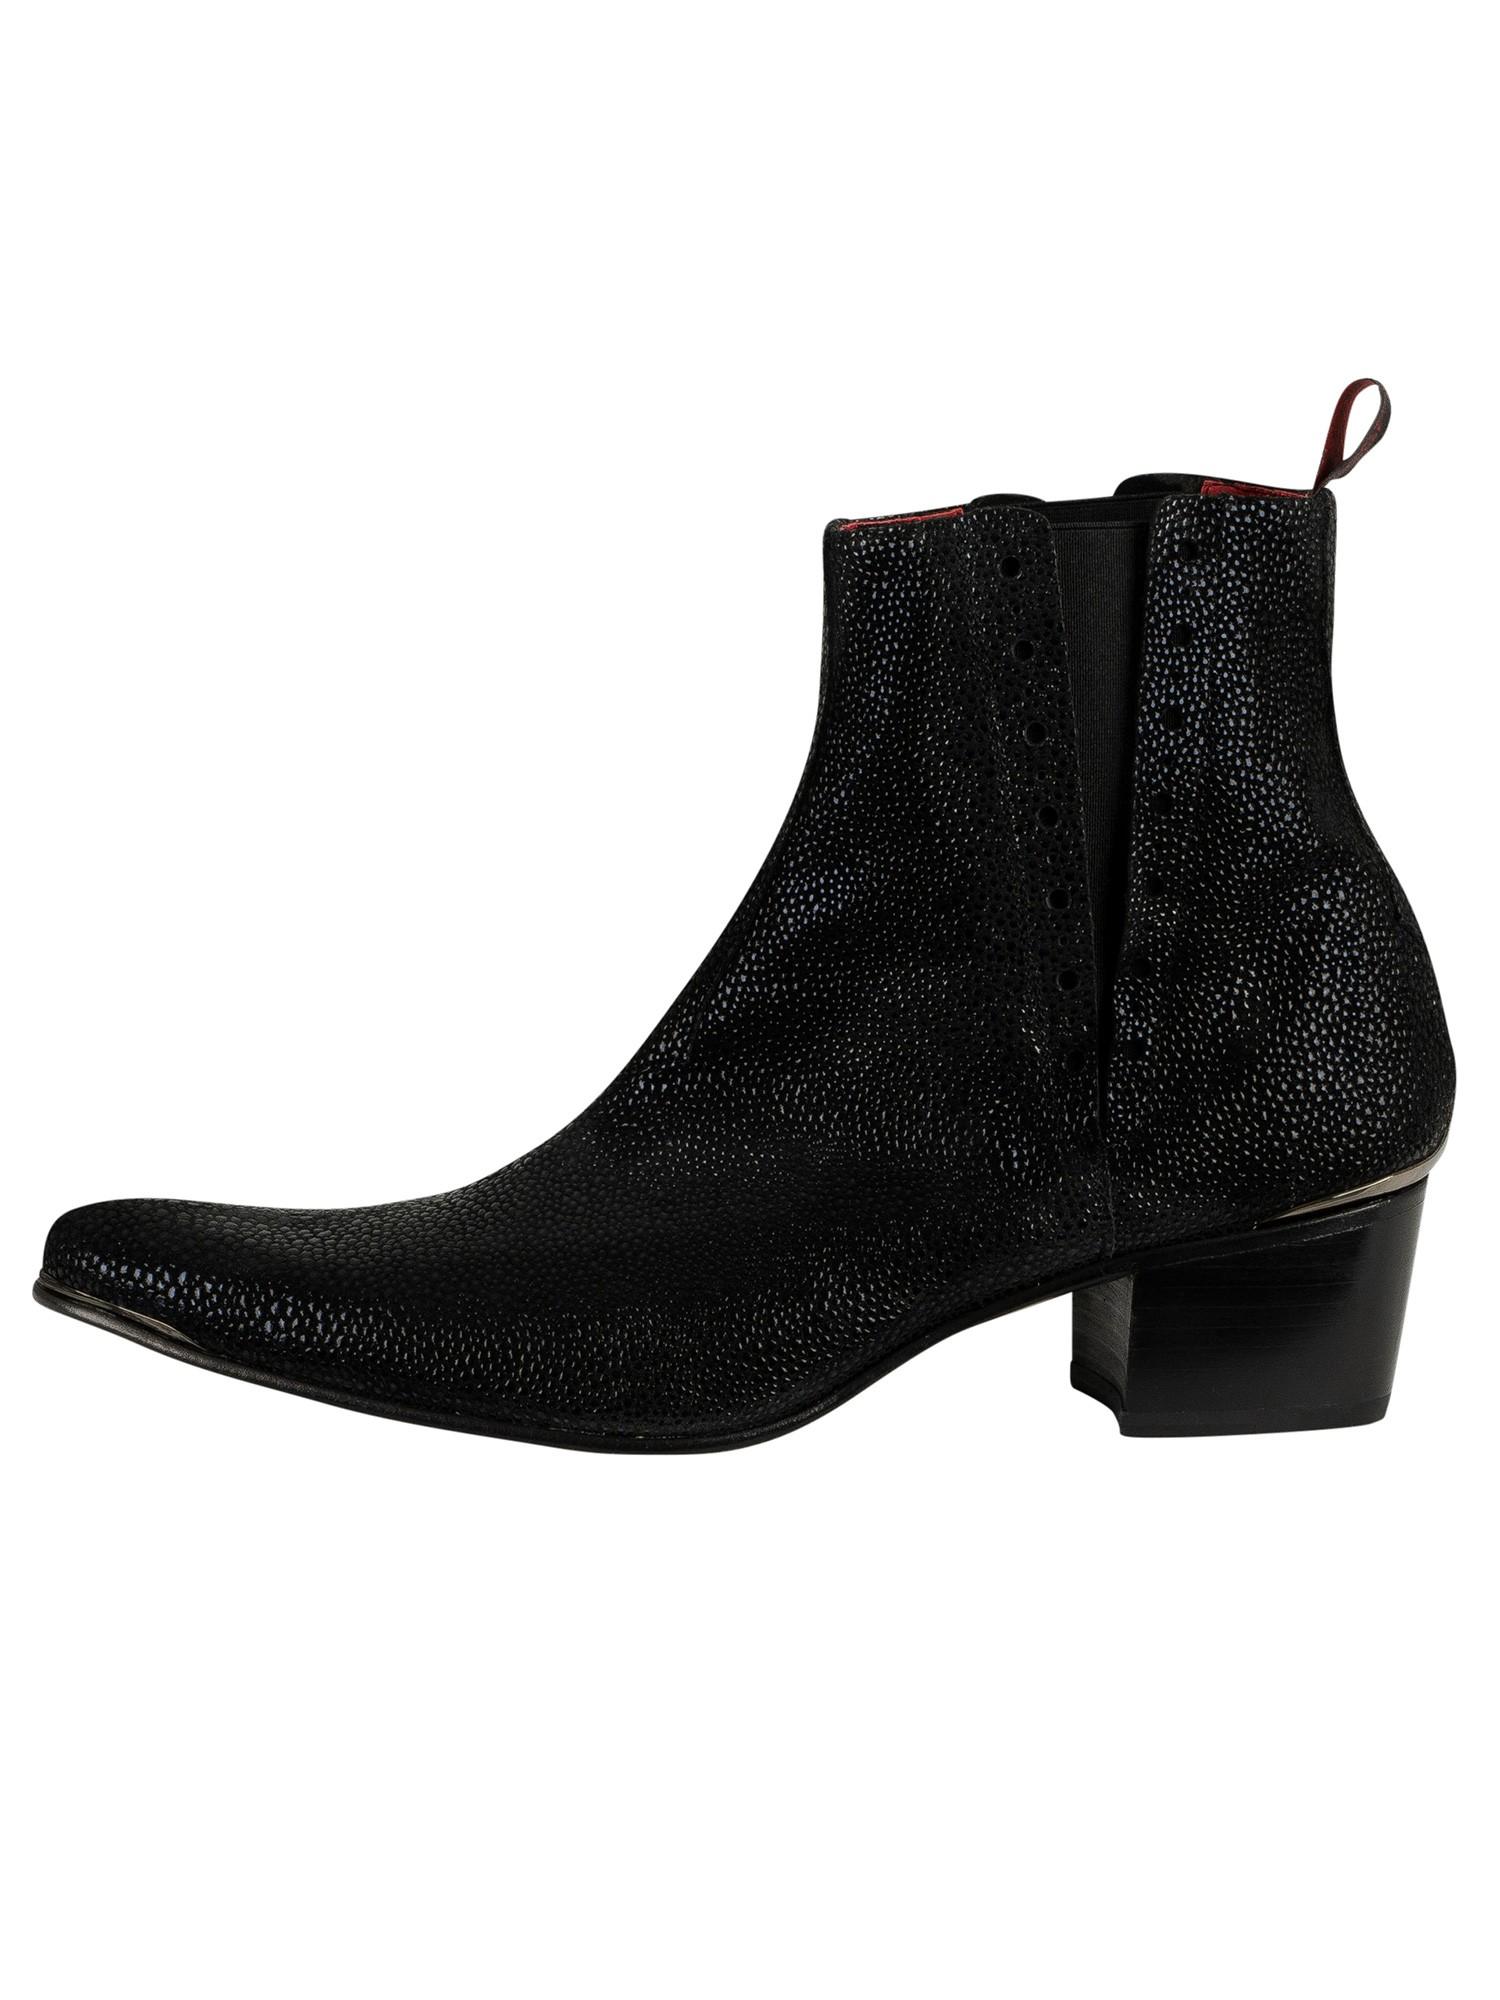 Jeffery West Murphy Leather Chelsea Boots in Black for Men - Lyst